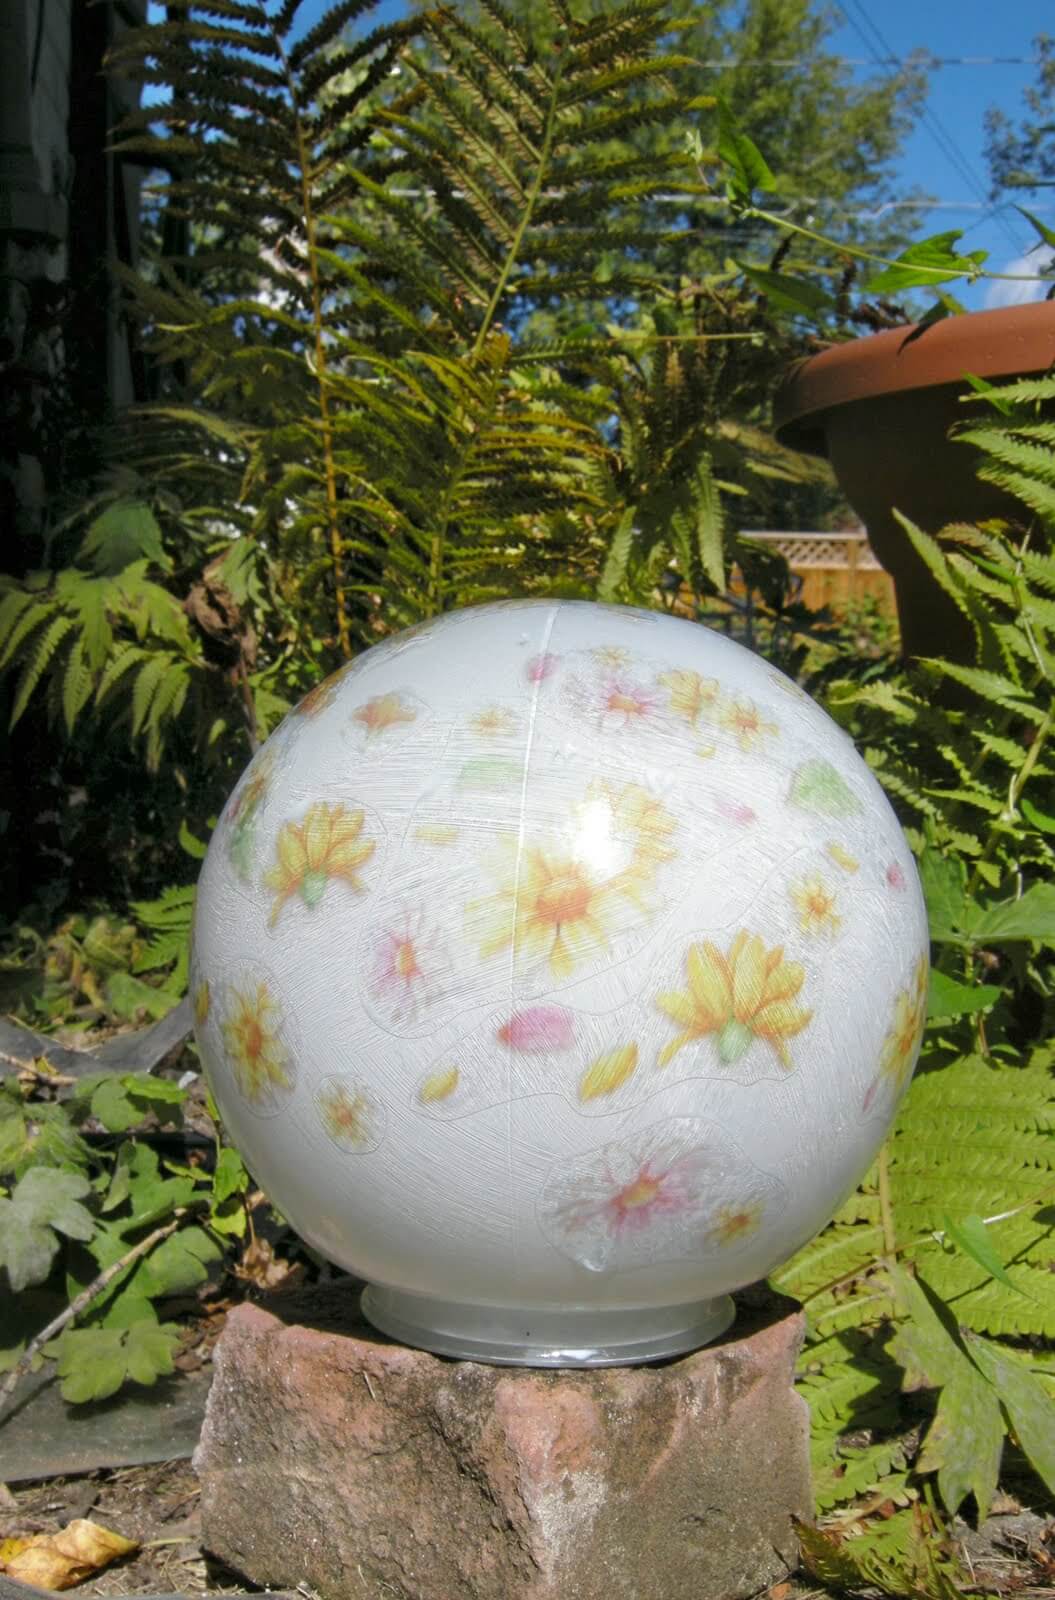 Floral DIY Garden Ball Idea | DIY Garden Ball Ideas